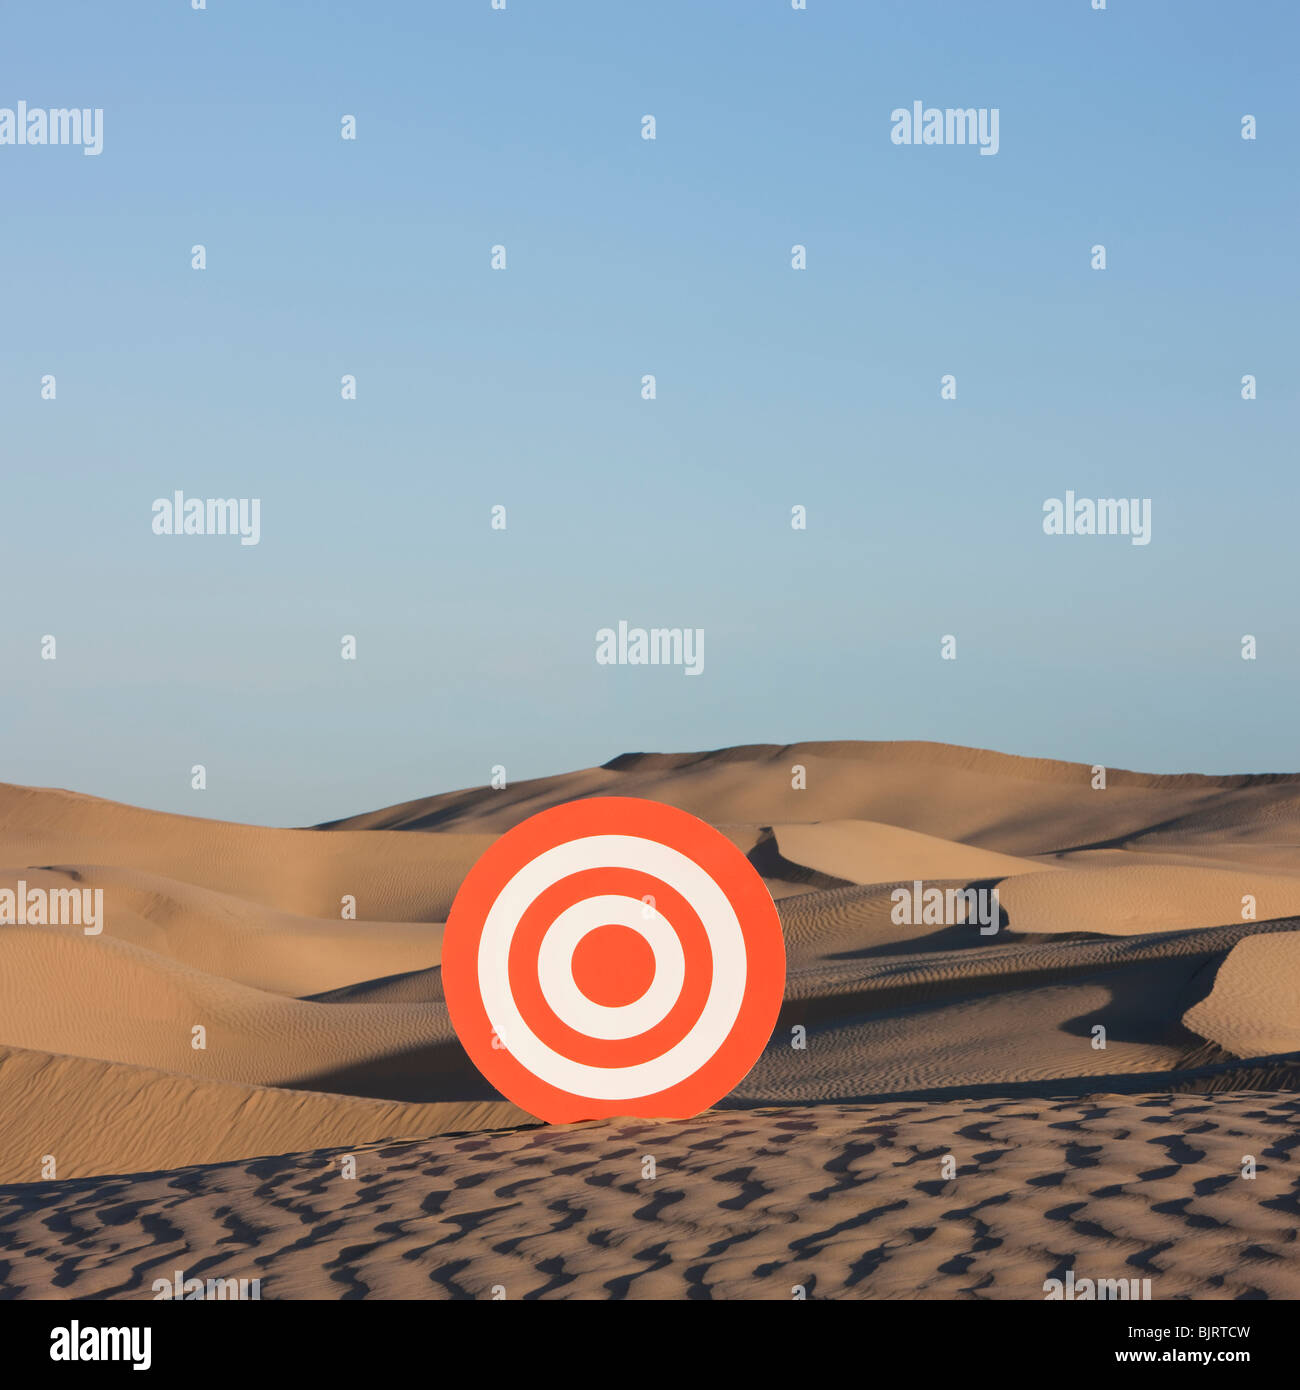 USA, Utah, Little Sahara, target on desert Stock Photo